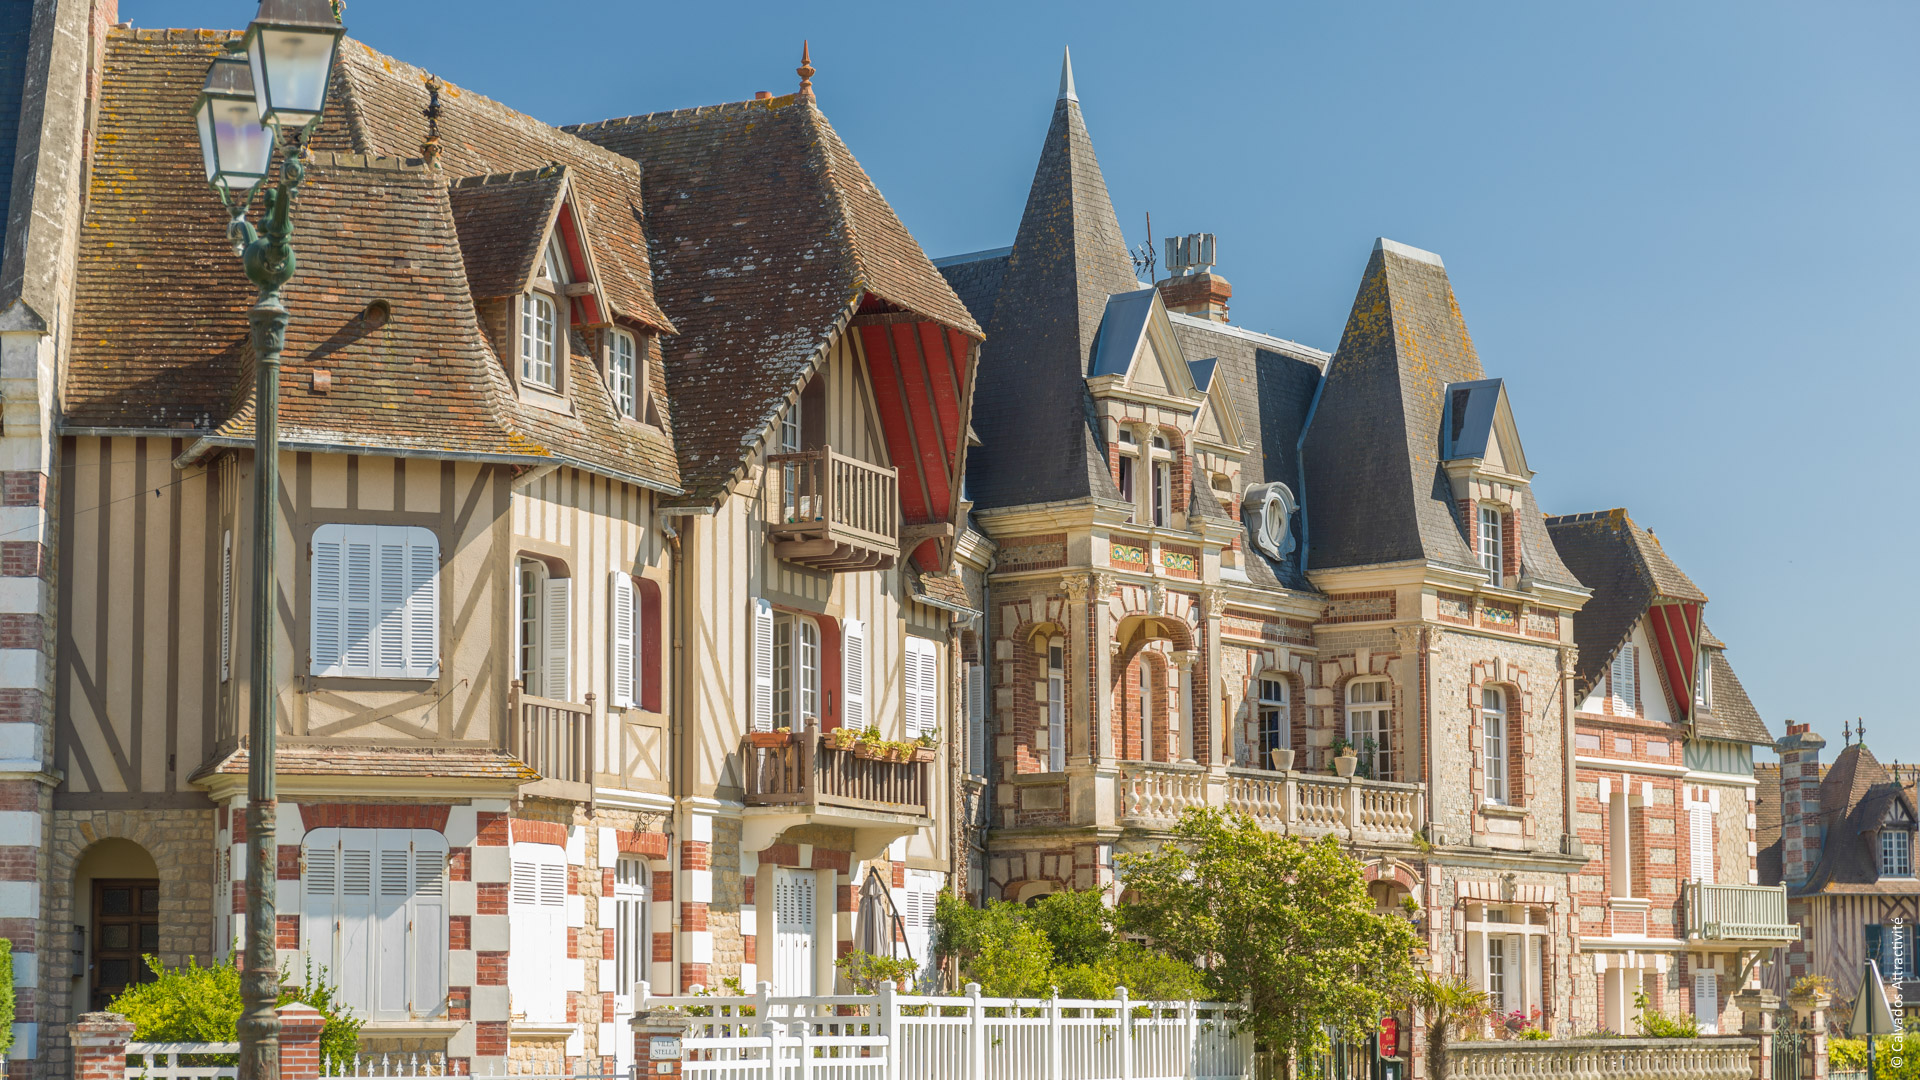 maisons à colombages typiques de Normandie